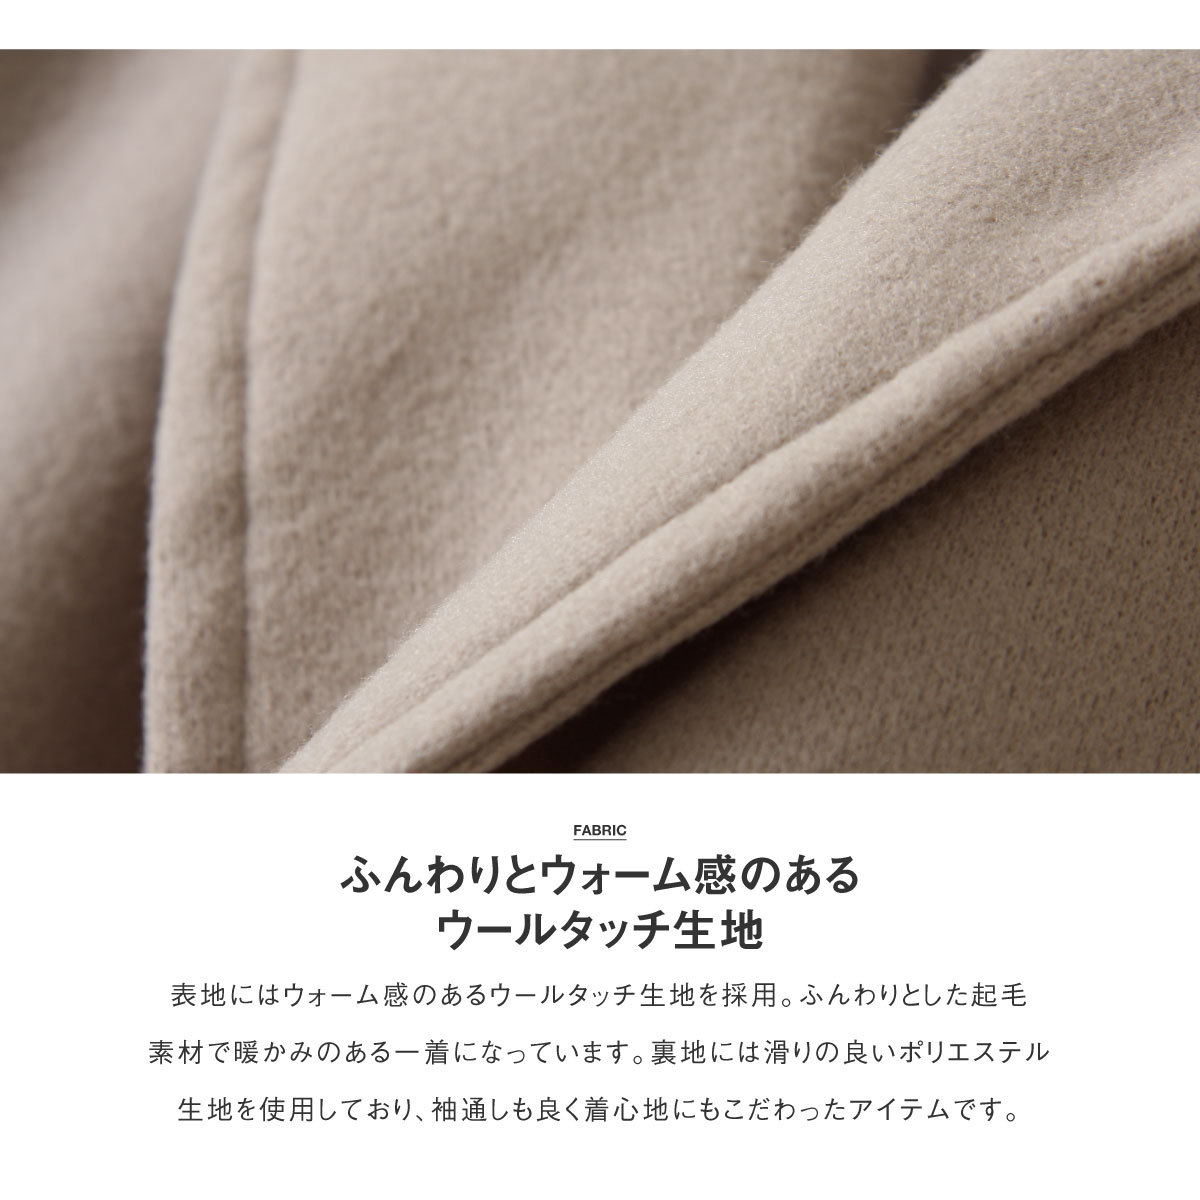 特価定番 コート ファッション (21053-34yz) zip - 通販 - PayPayモール メンズ タイロッケンコート オーバーコート ウールライク オーバーサイズ 格安日本製